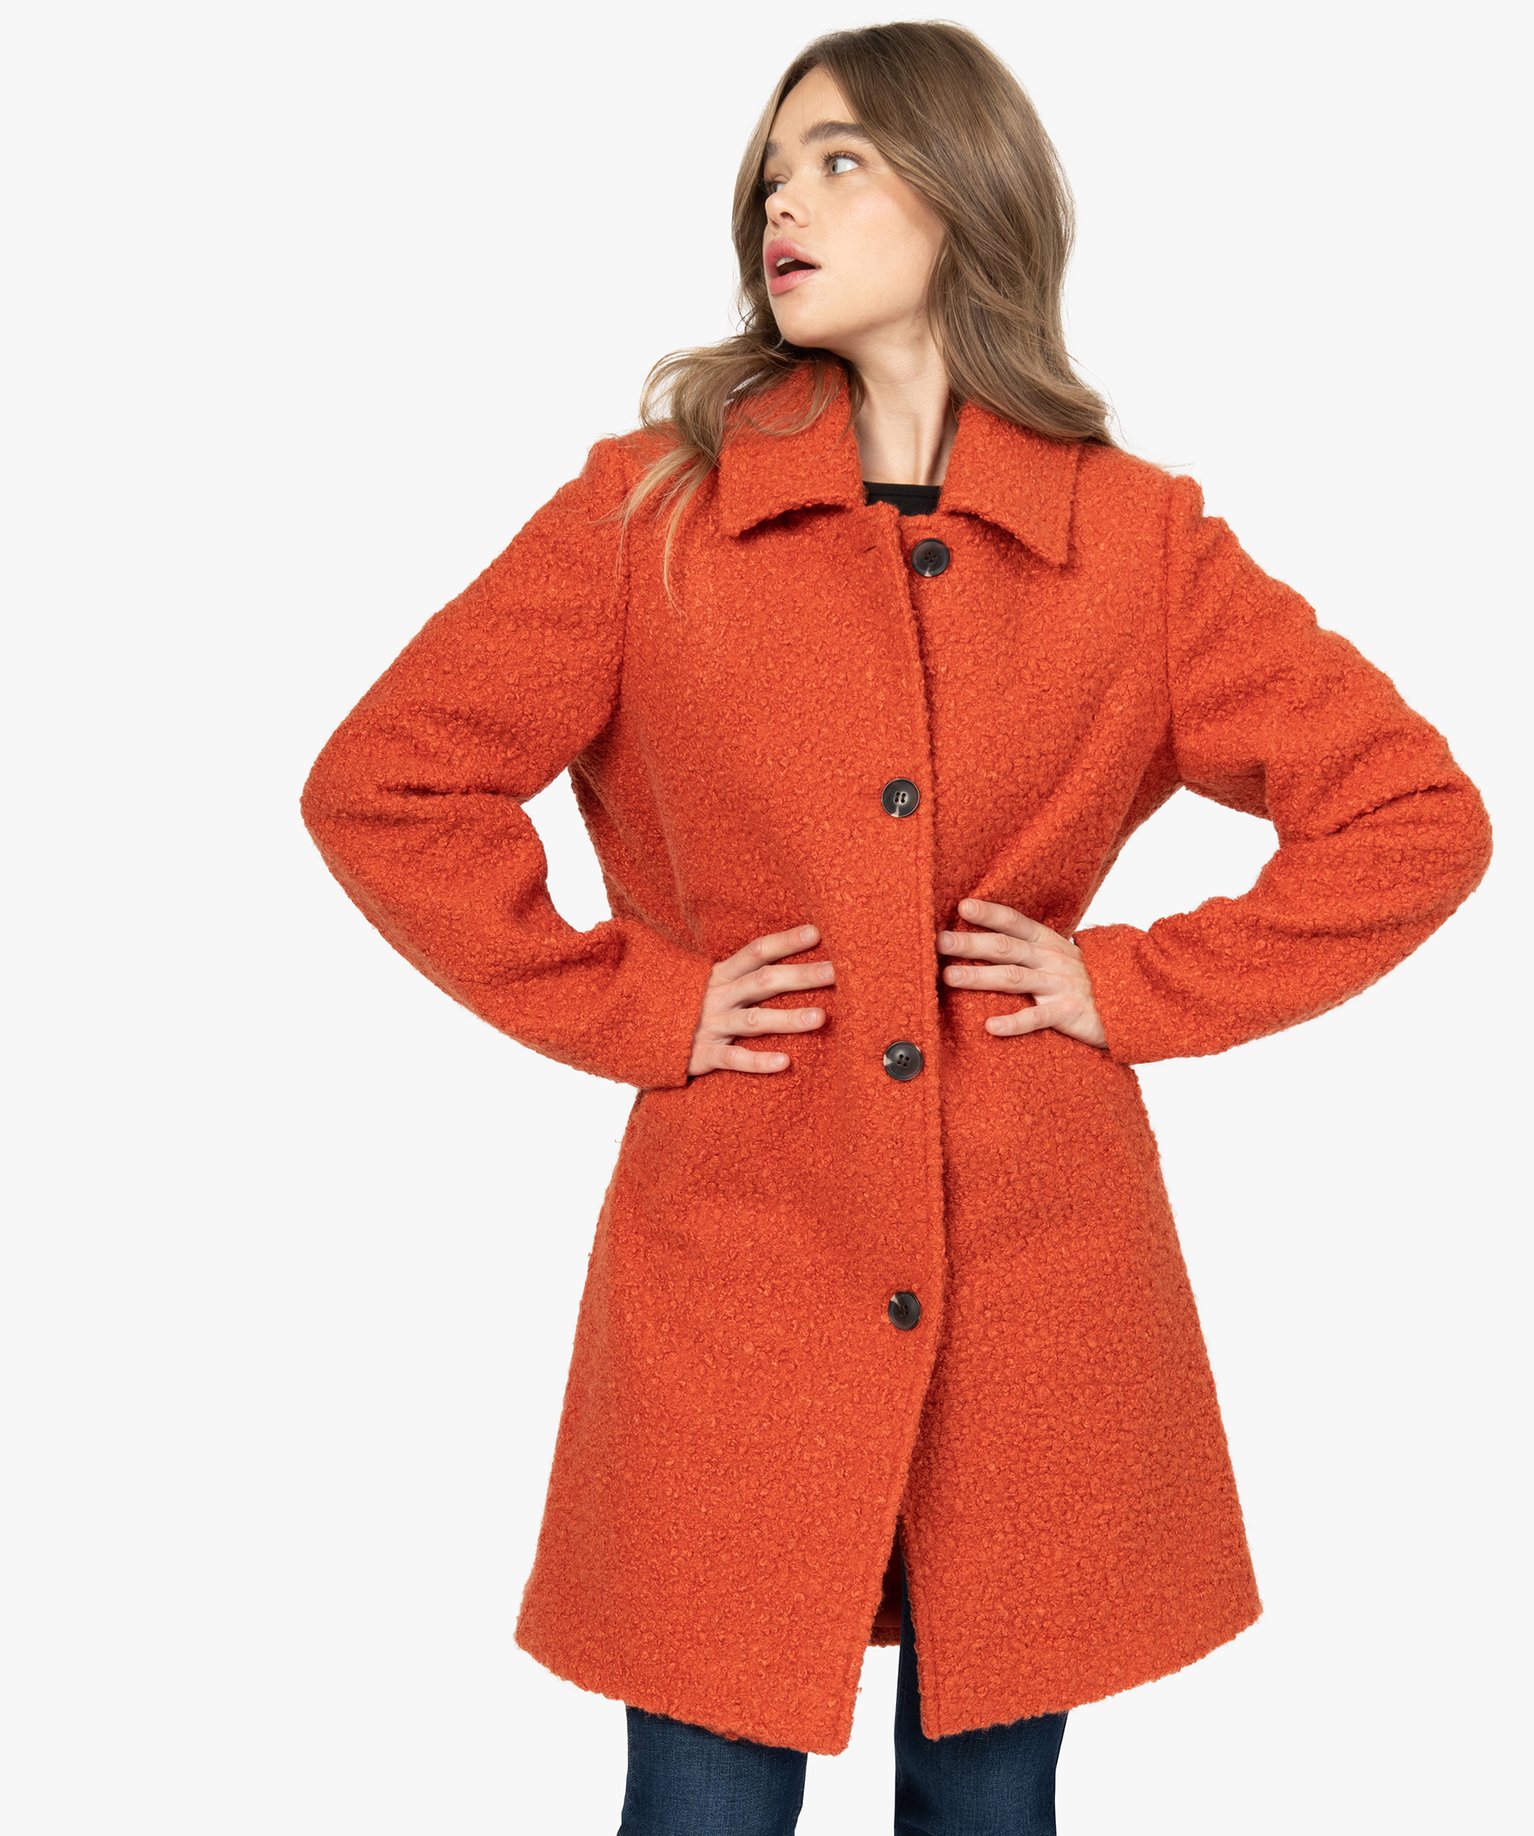 manteaux femme orange